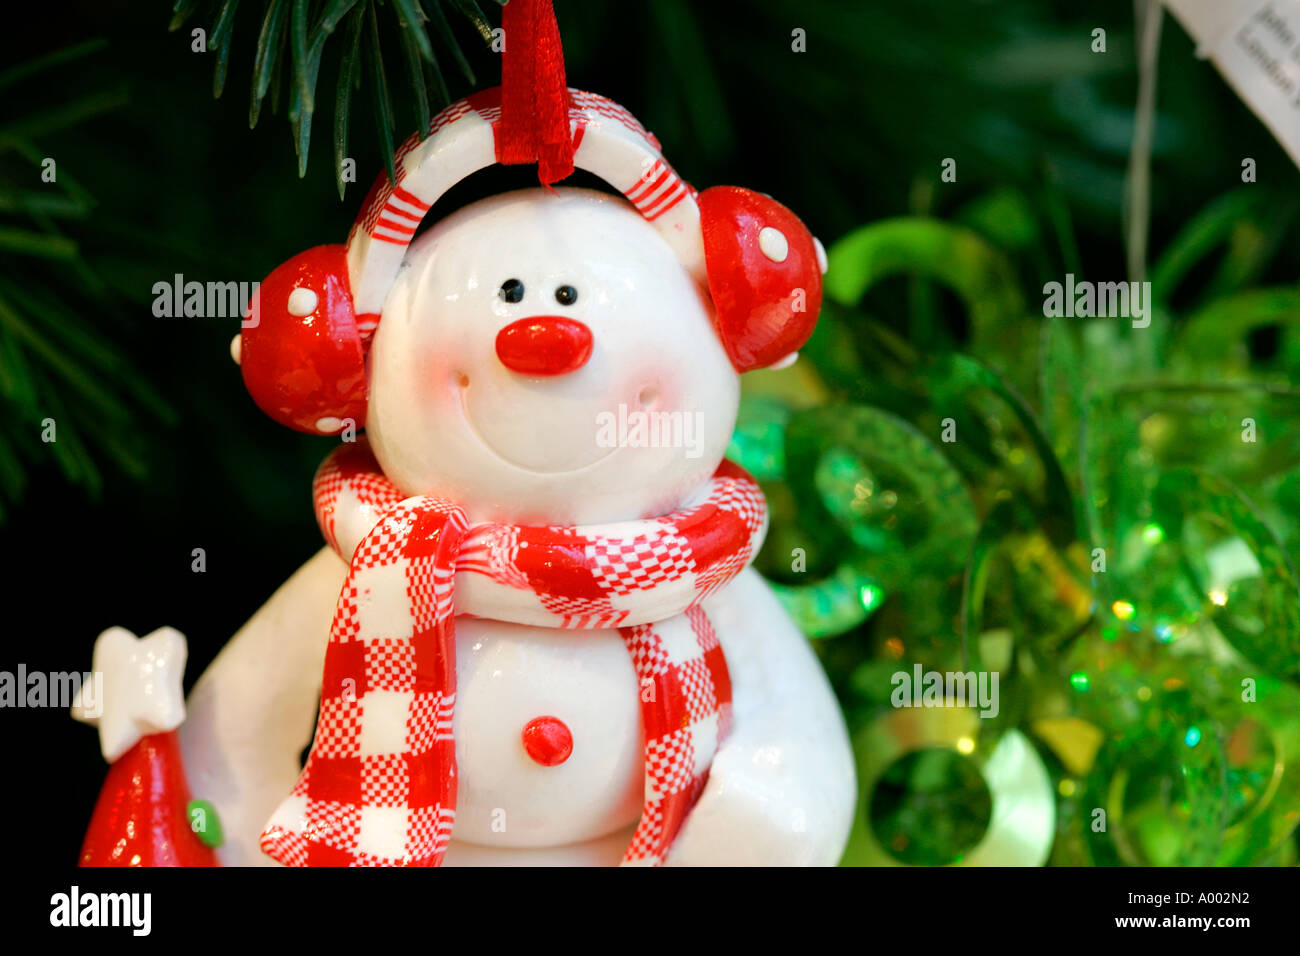 Schneemann Weihnachten X-Mas Dekoration Spielzeug dekorieren Party Feier weichen Geschenke Weihnachten Neujahr Christian Vater Weihnachtsbeleuchtung Stockfoto